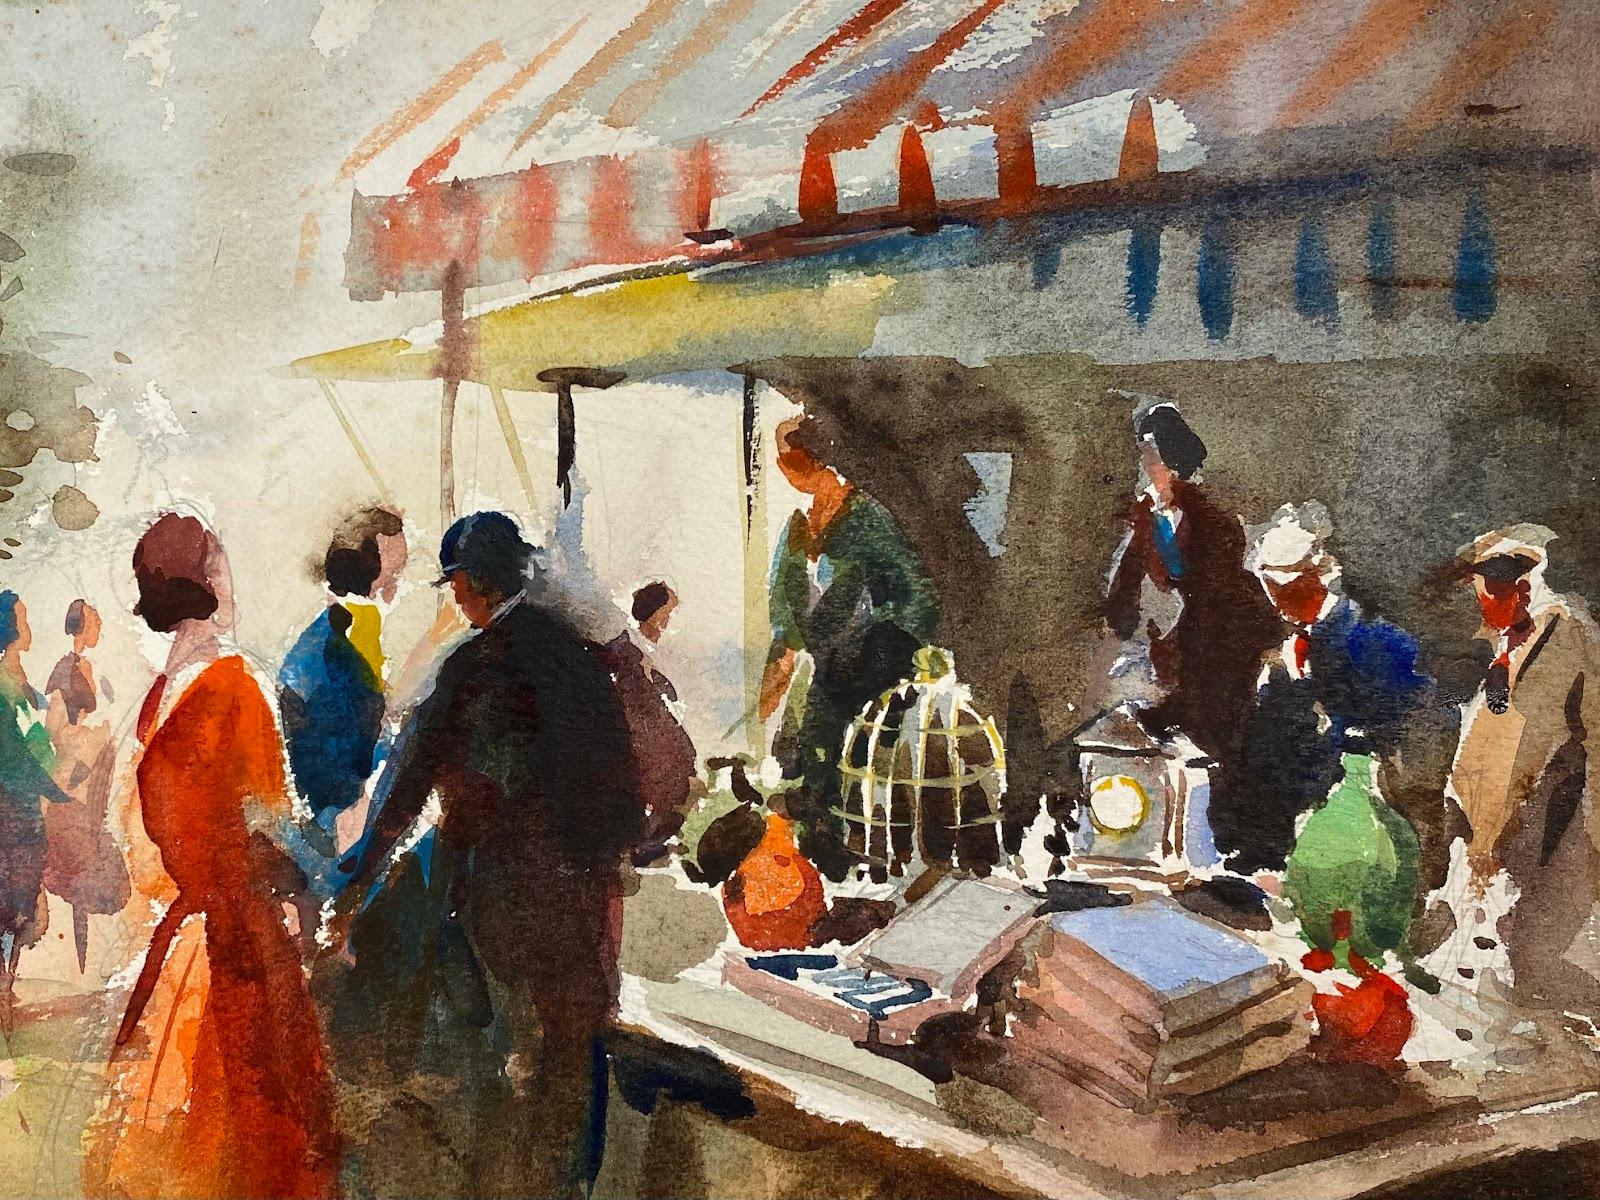 Impressionistische britische Gemäldefiguren aus der Mitte des 20. Jahrhunderts, auf antikem Markt  (Impressionismus), Art, von Frank Duffield